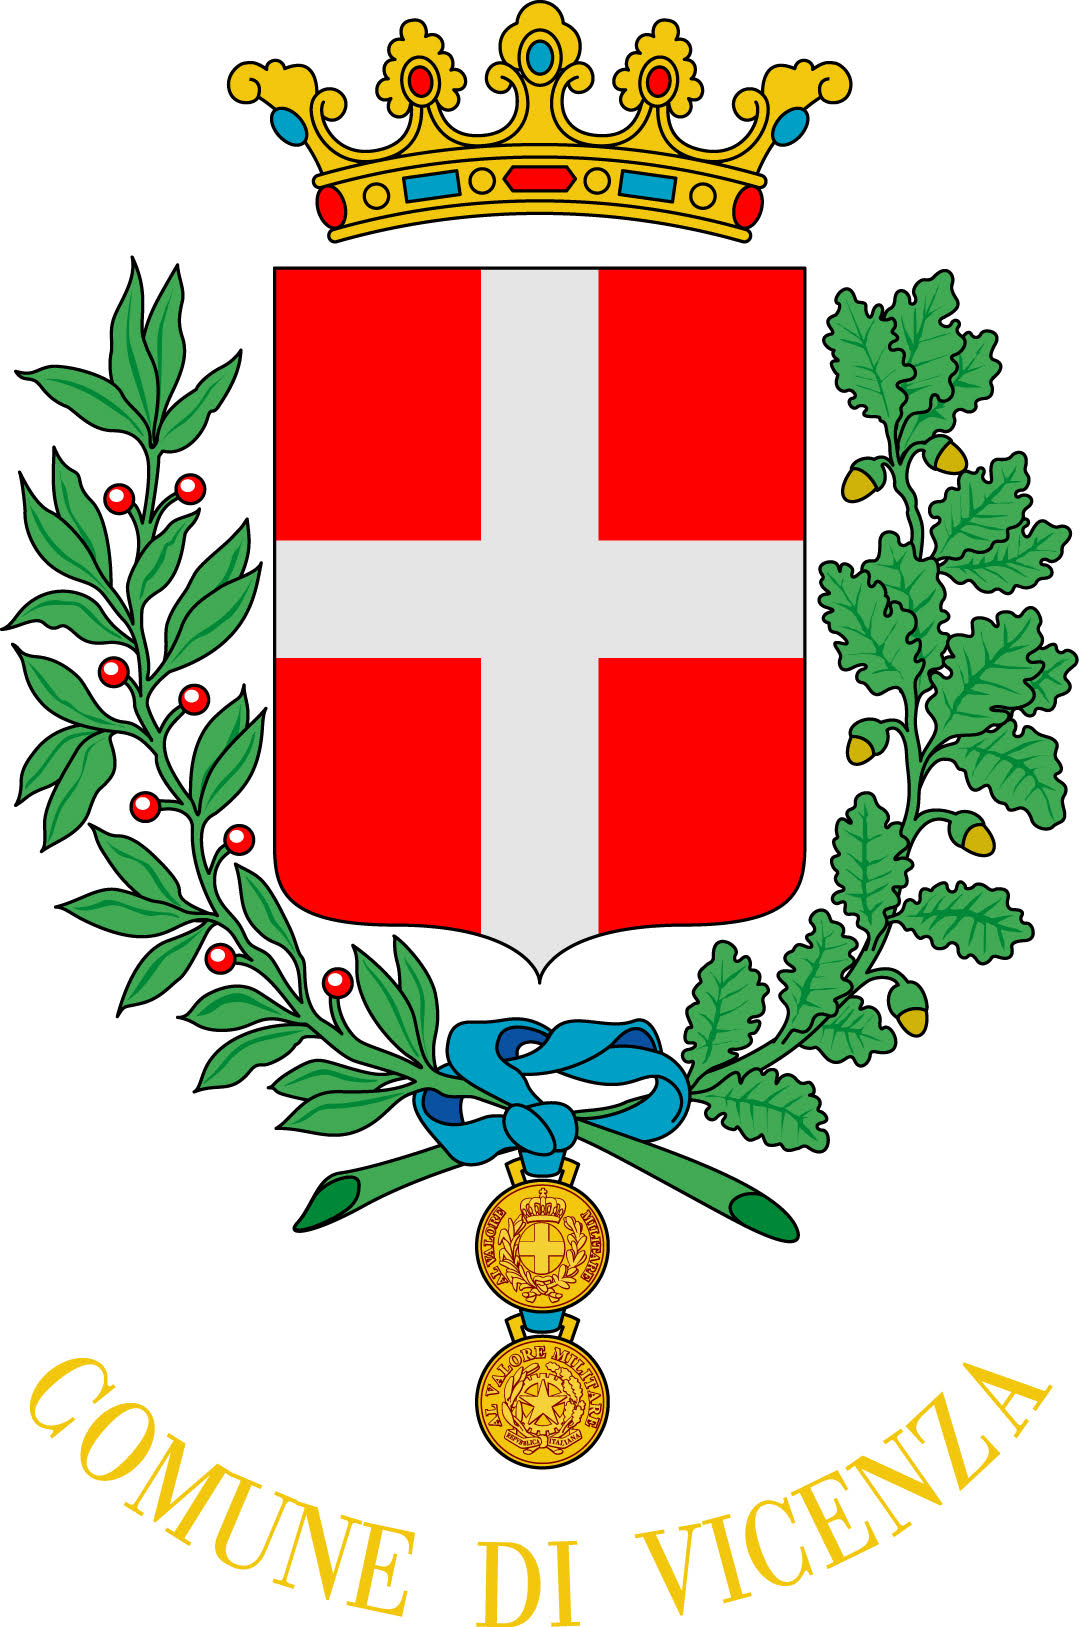 Comune di Vicenza logo